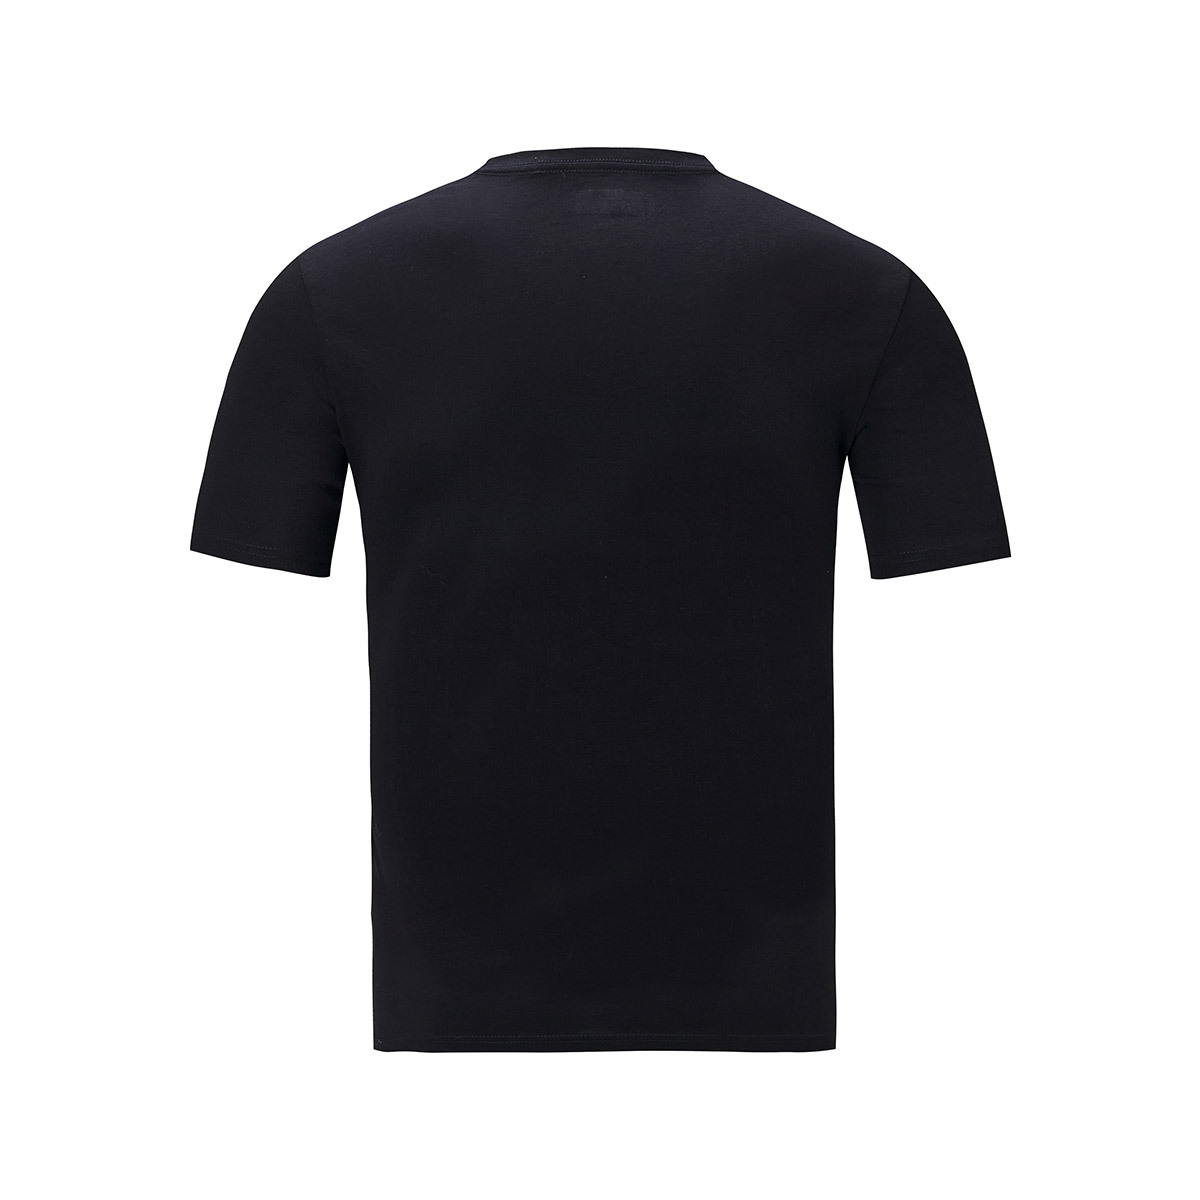 컬럼비아 남성 반소매 티셔츠 - 블랙, L